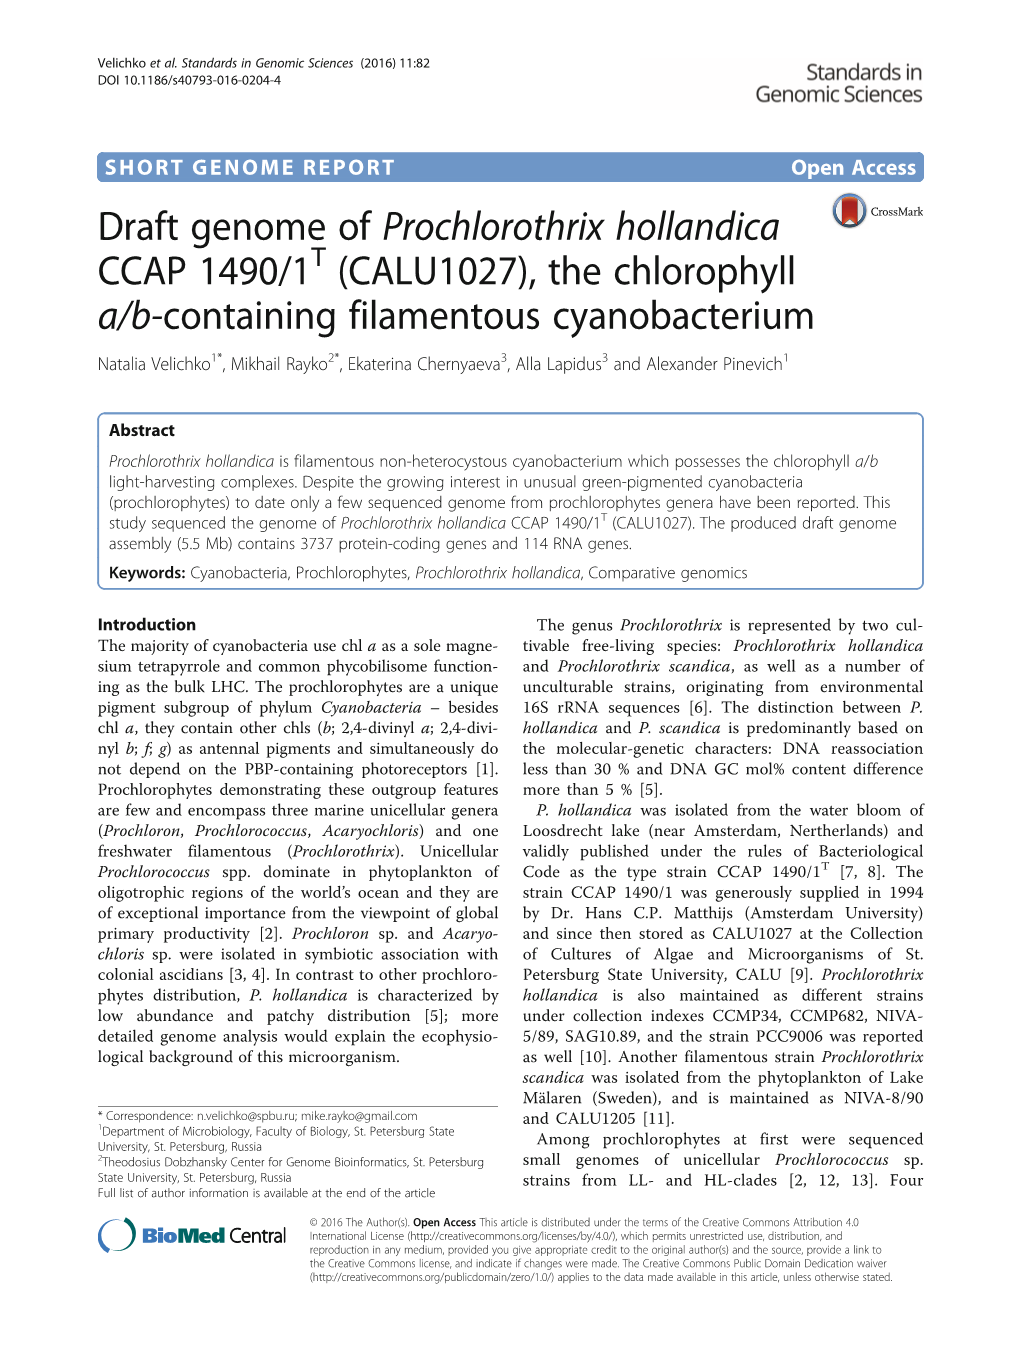 Draft Genome of Prochlorothrix Hollandica CCAP 1490/1T